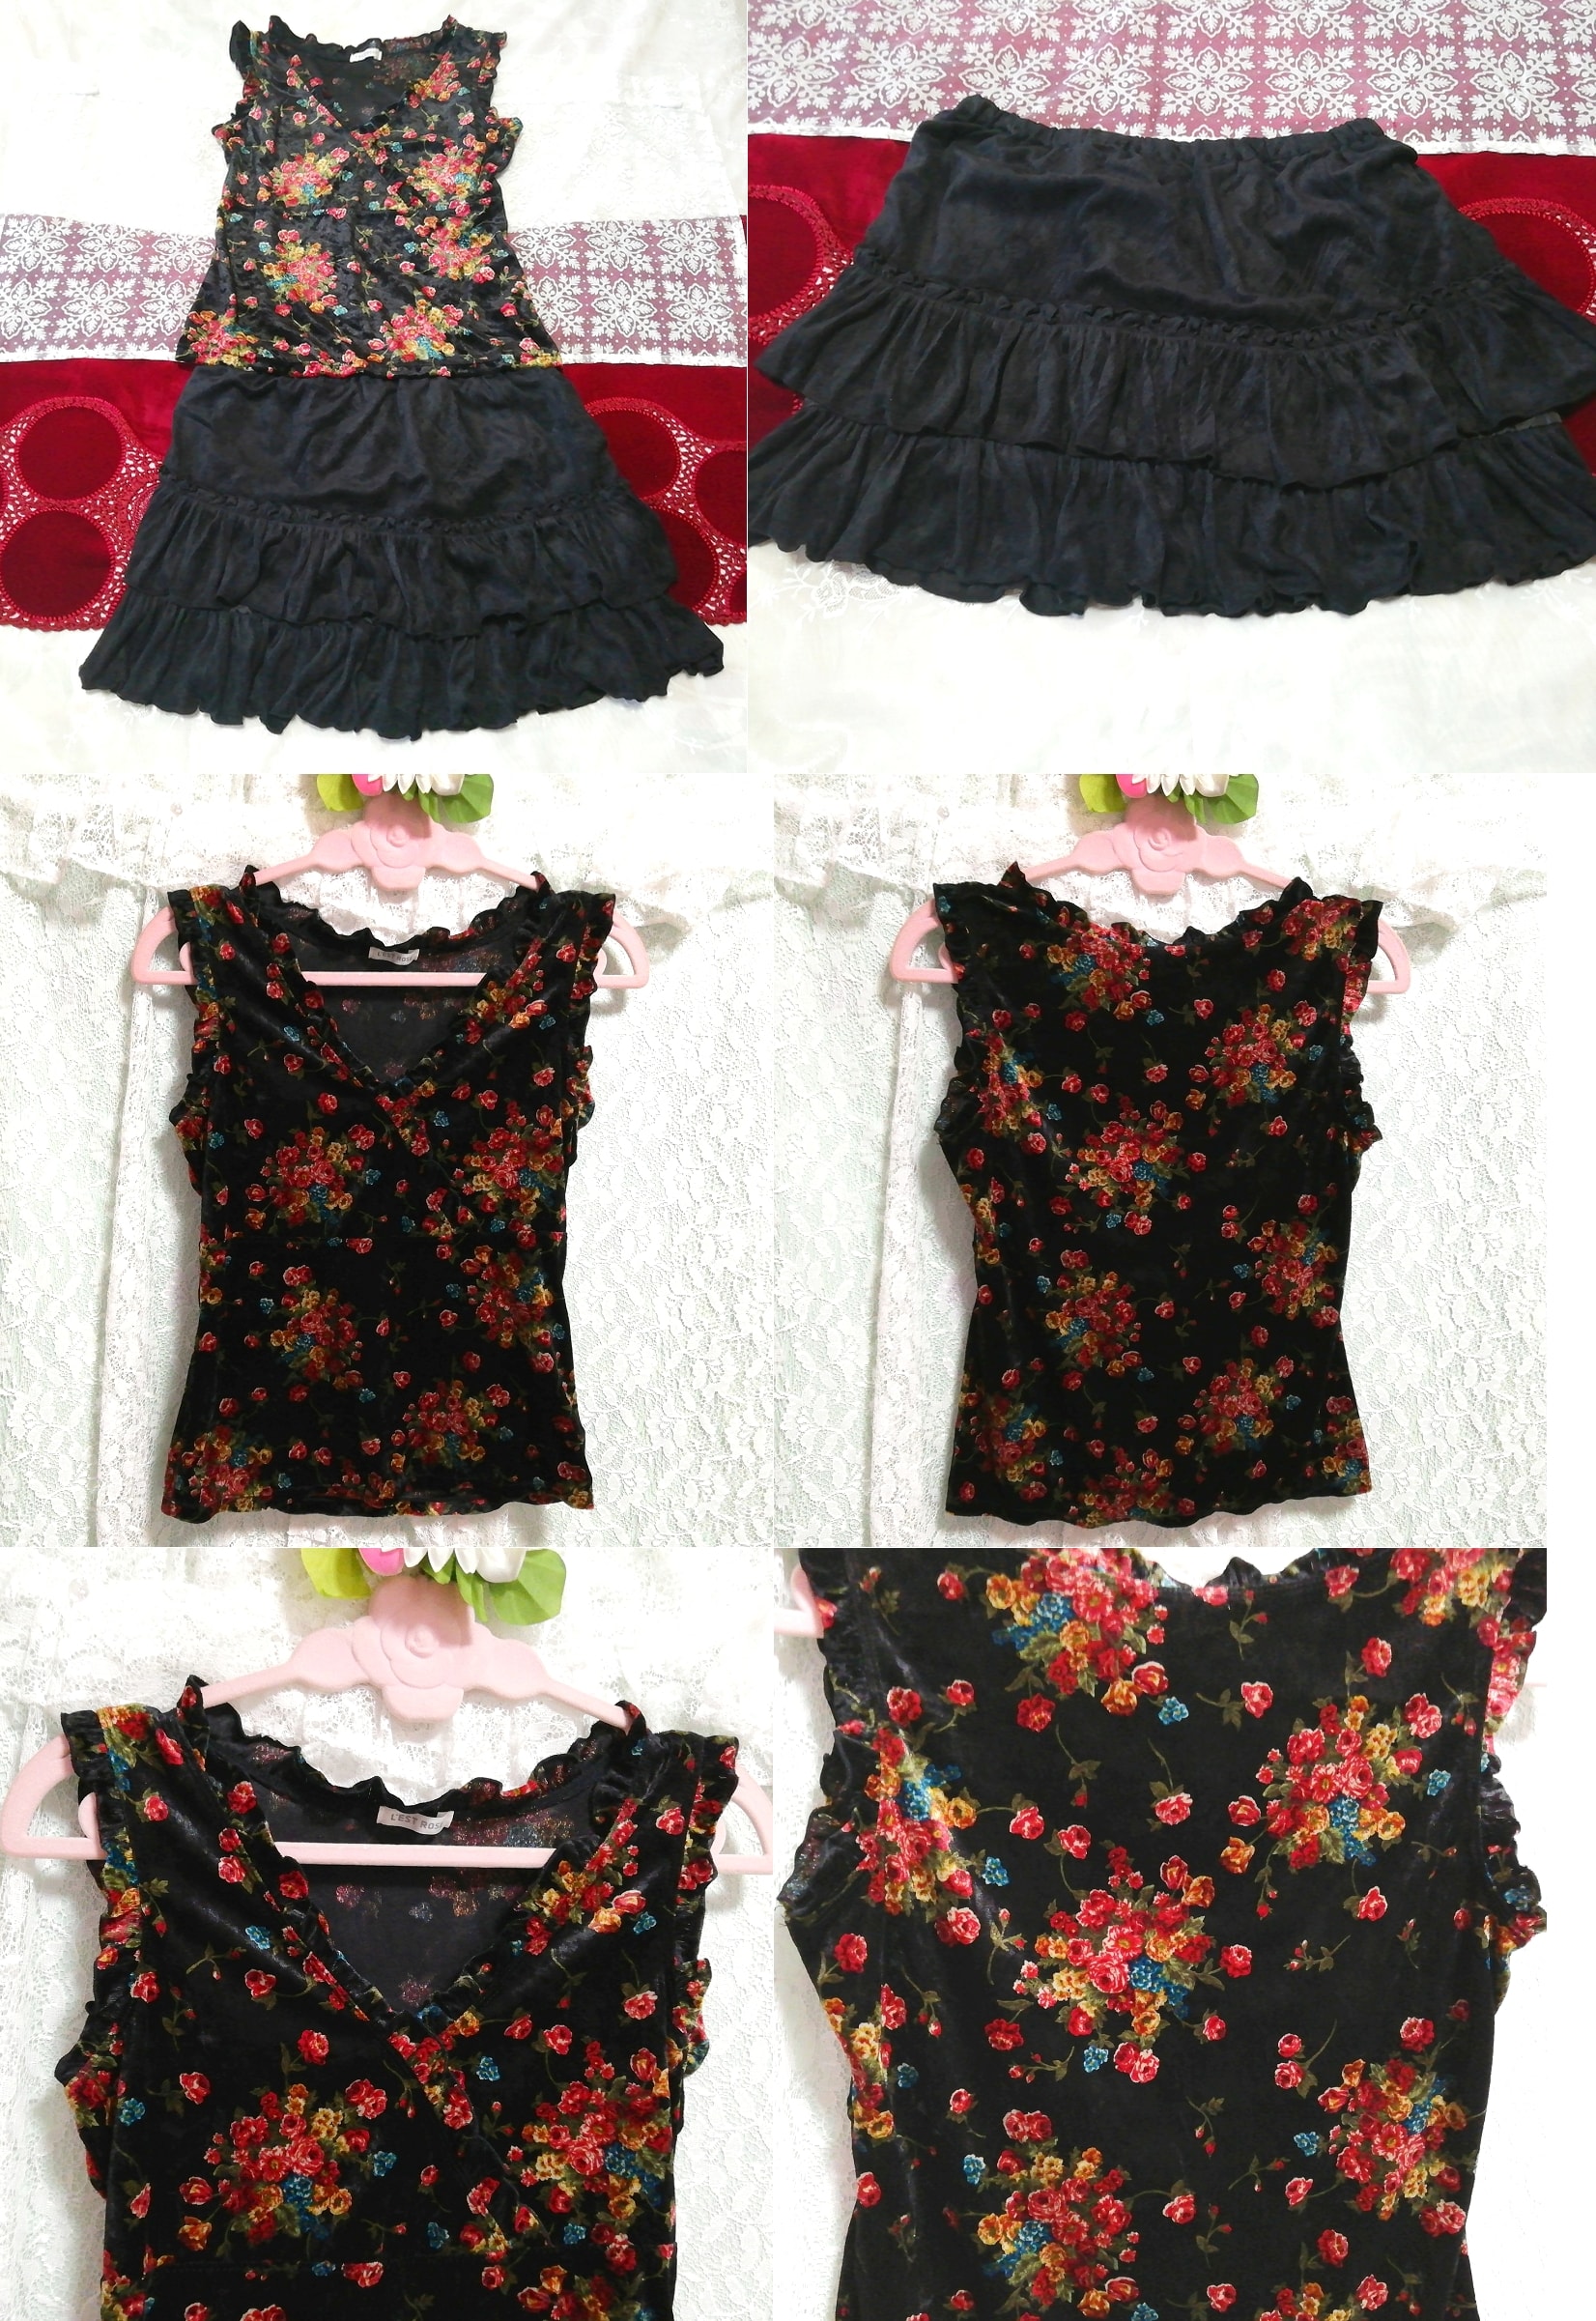 Schwarzes, ärmelloses Tunika-Negligé-Nachthemd mit Blumenmuster aus Velours, schwarzer Rüschen-Minirock, 2 Stück, Mode, Frauenmode, Nachtwäsche, Pyjama